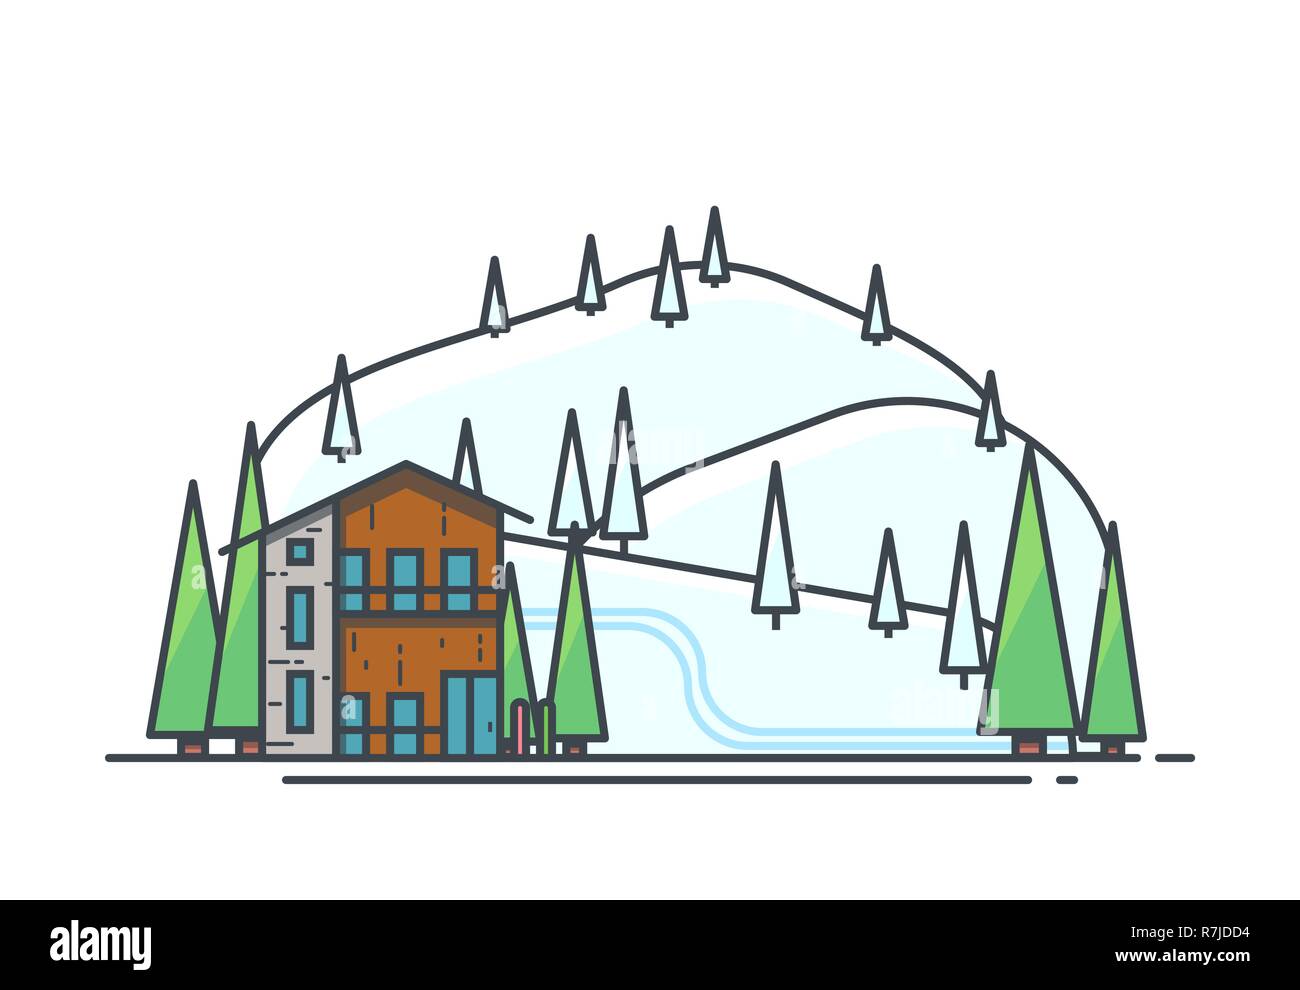 Ski Resort Urlaub. Grosse moderne Ferienhäuser Holzhaus mit Bäumen. Berge und Hügel mit Schnee bedeckt. Moderne Linie Vektor illus Stock Vektor